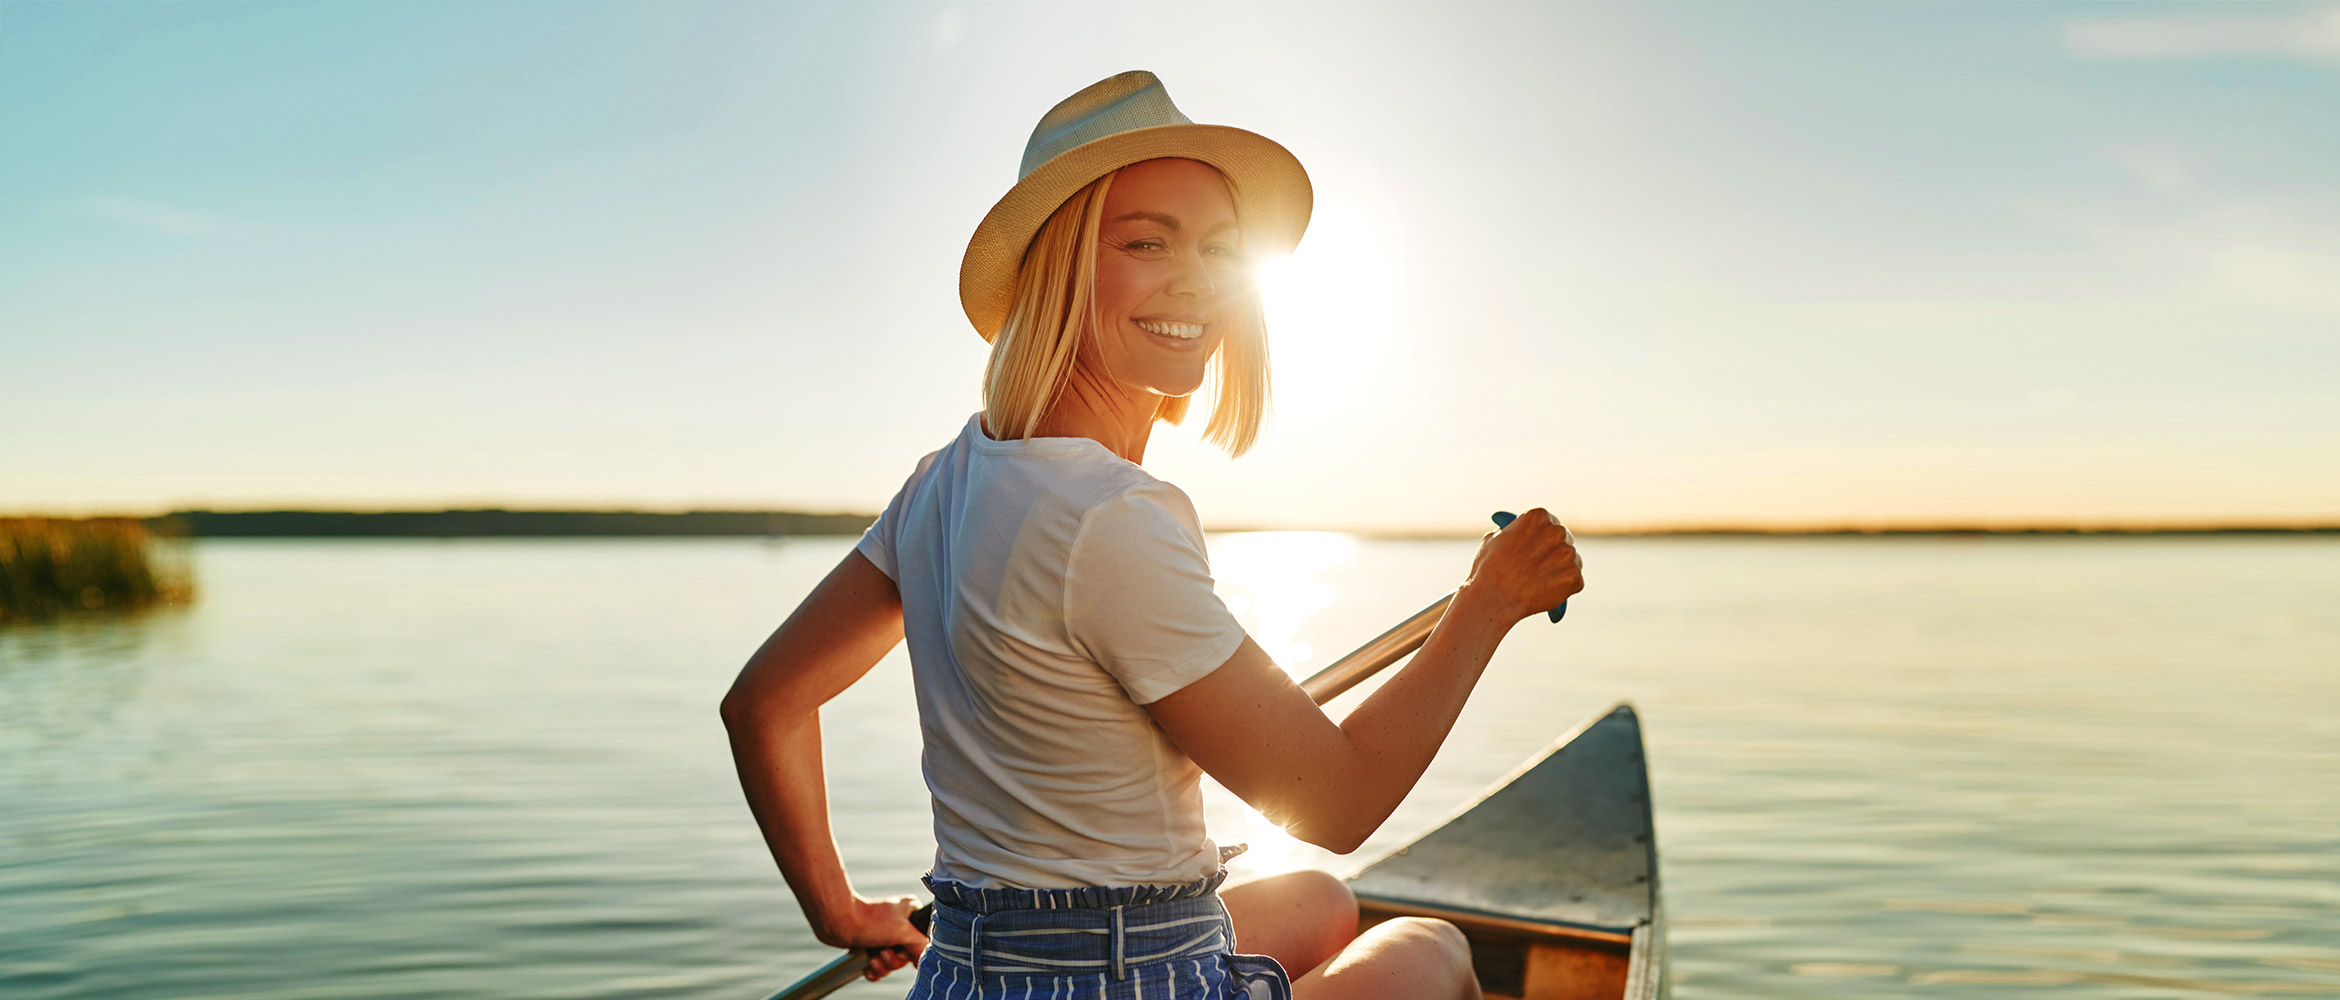 Lächelnde Frau mit Strohhut beim Rudern in einem Kanu, genießt die Sonne auf einem ruhigen Gewässer während des Sonnenuntergangs.